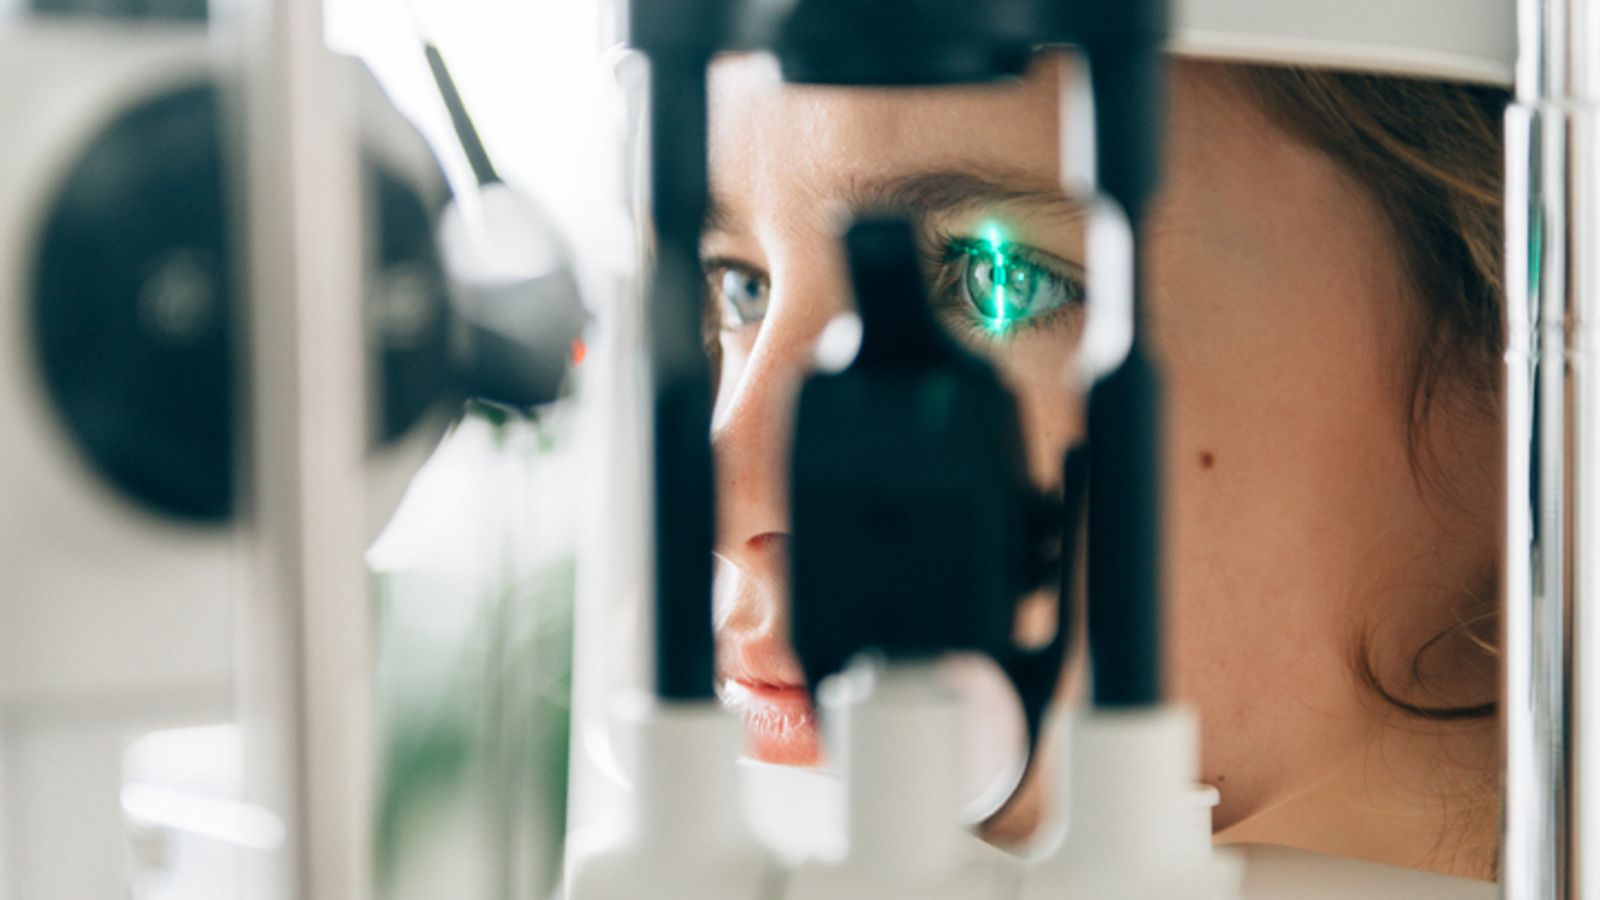 Технологията зад ChatGPT се справя по-добре със съвети за проблеми с очите, отколкото лекарите неспециалисти, установява проучвателен тест